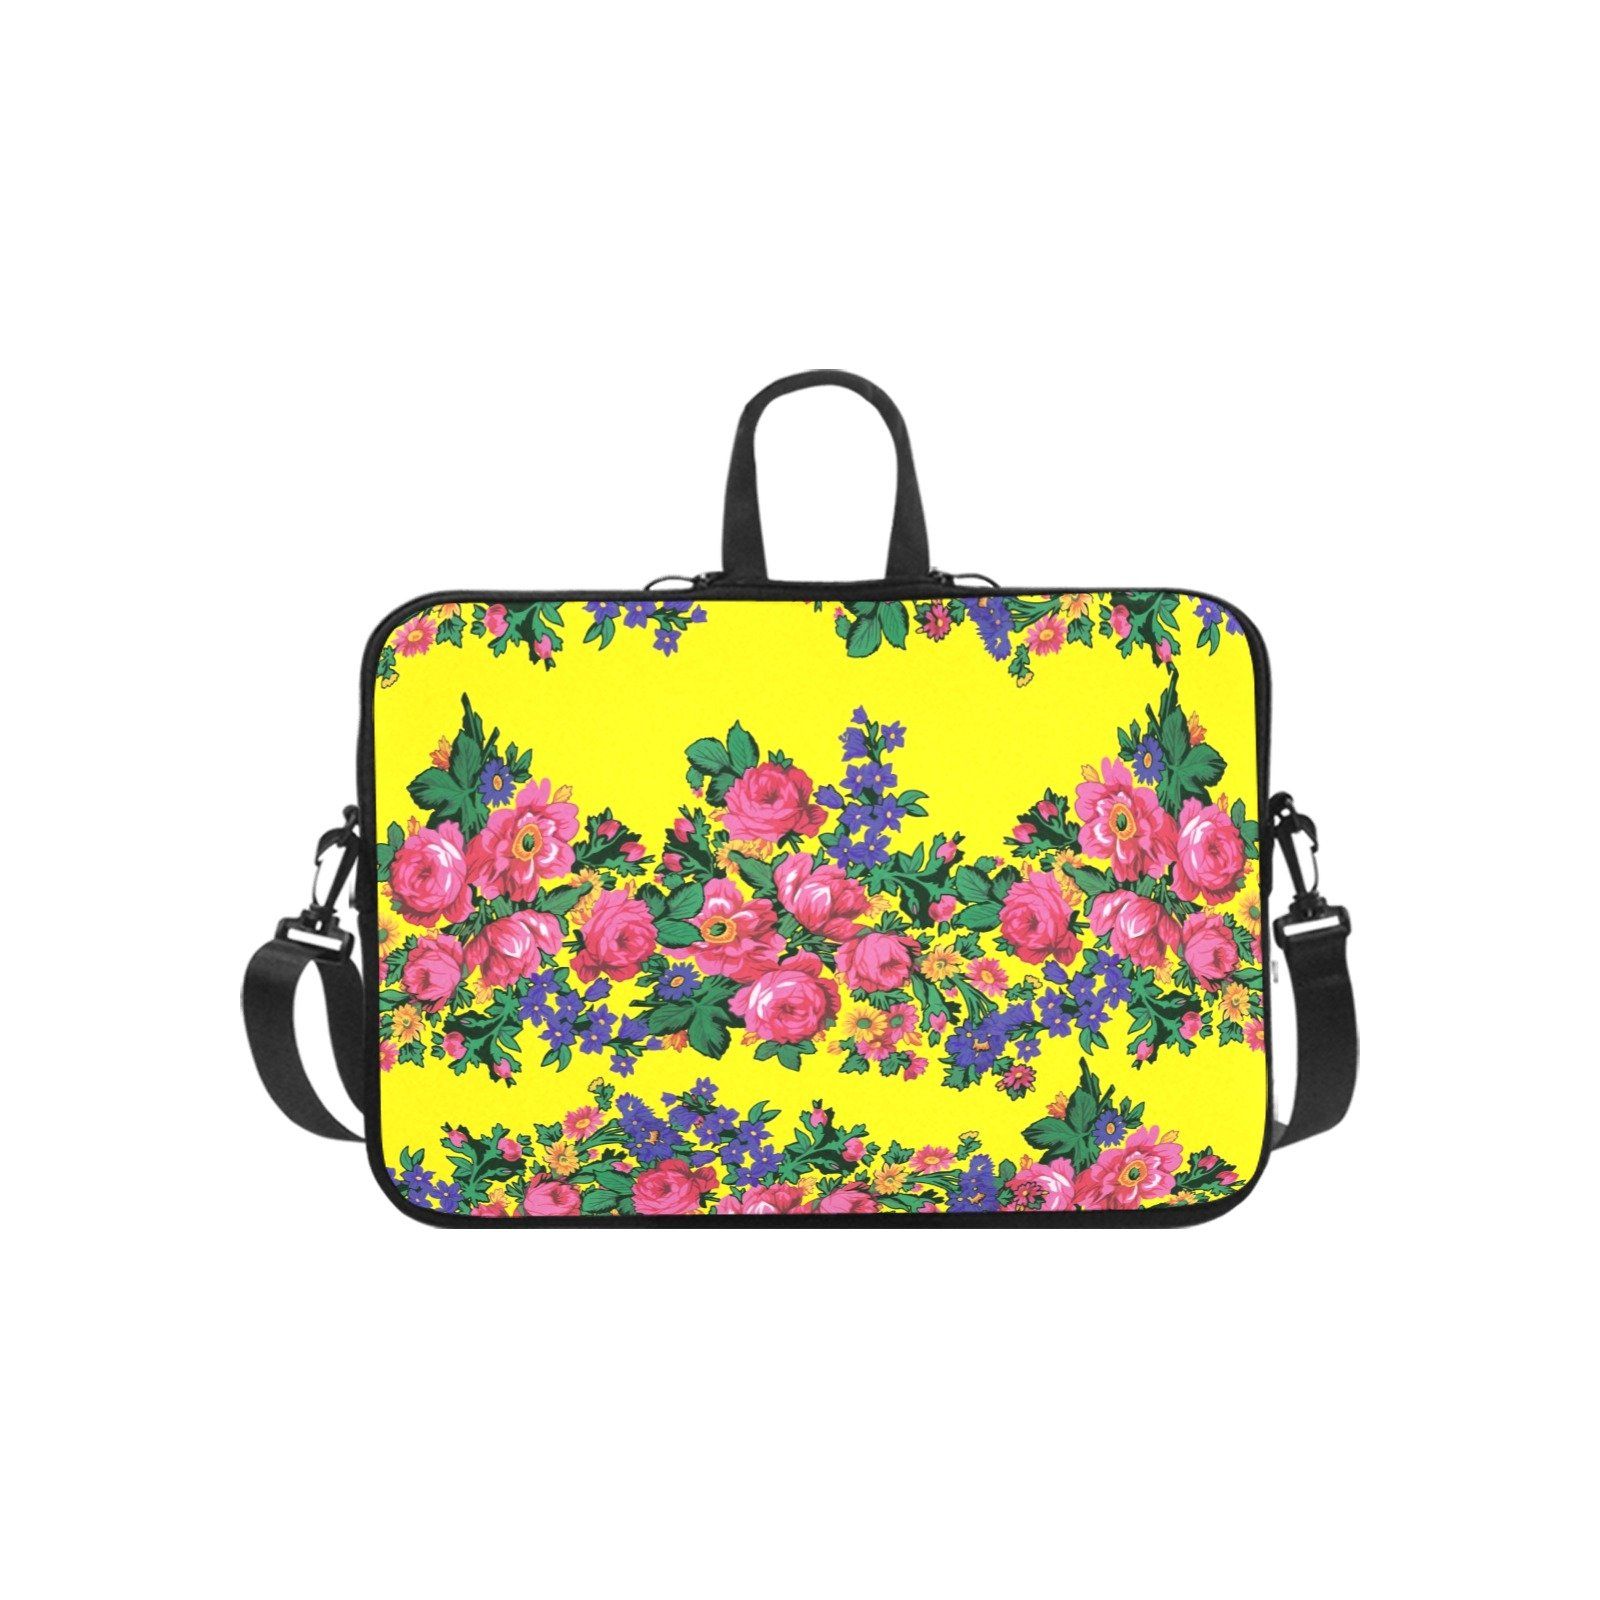 Kokum's Revenge-Yellow Laptop Handbags 14" bag e-joyer 